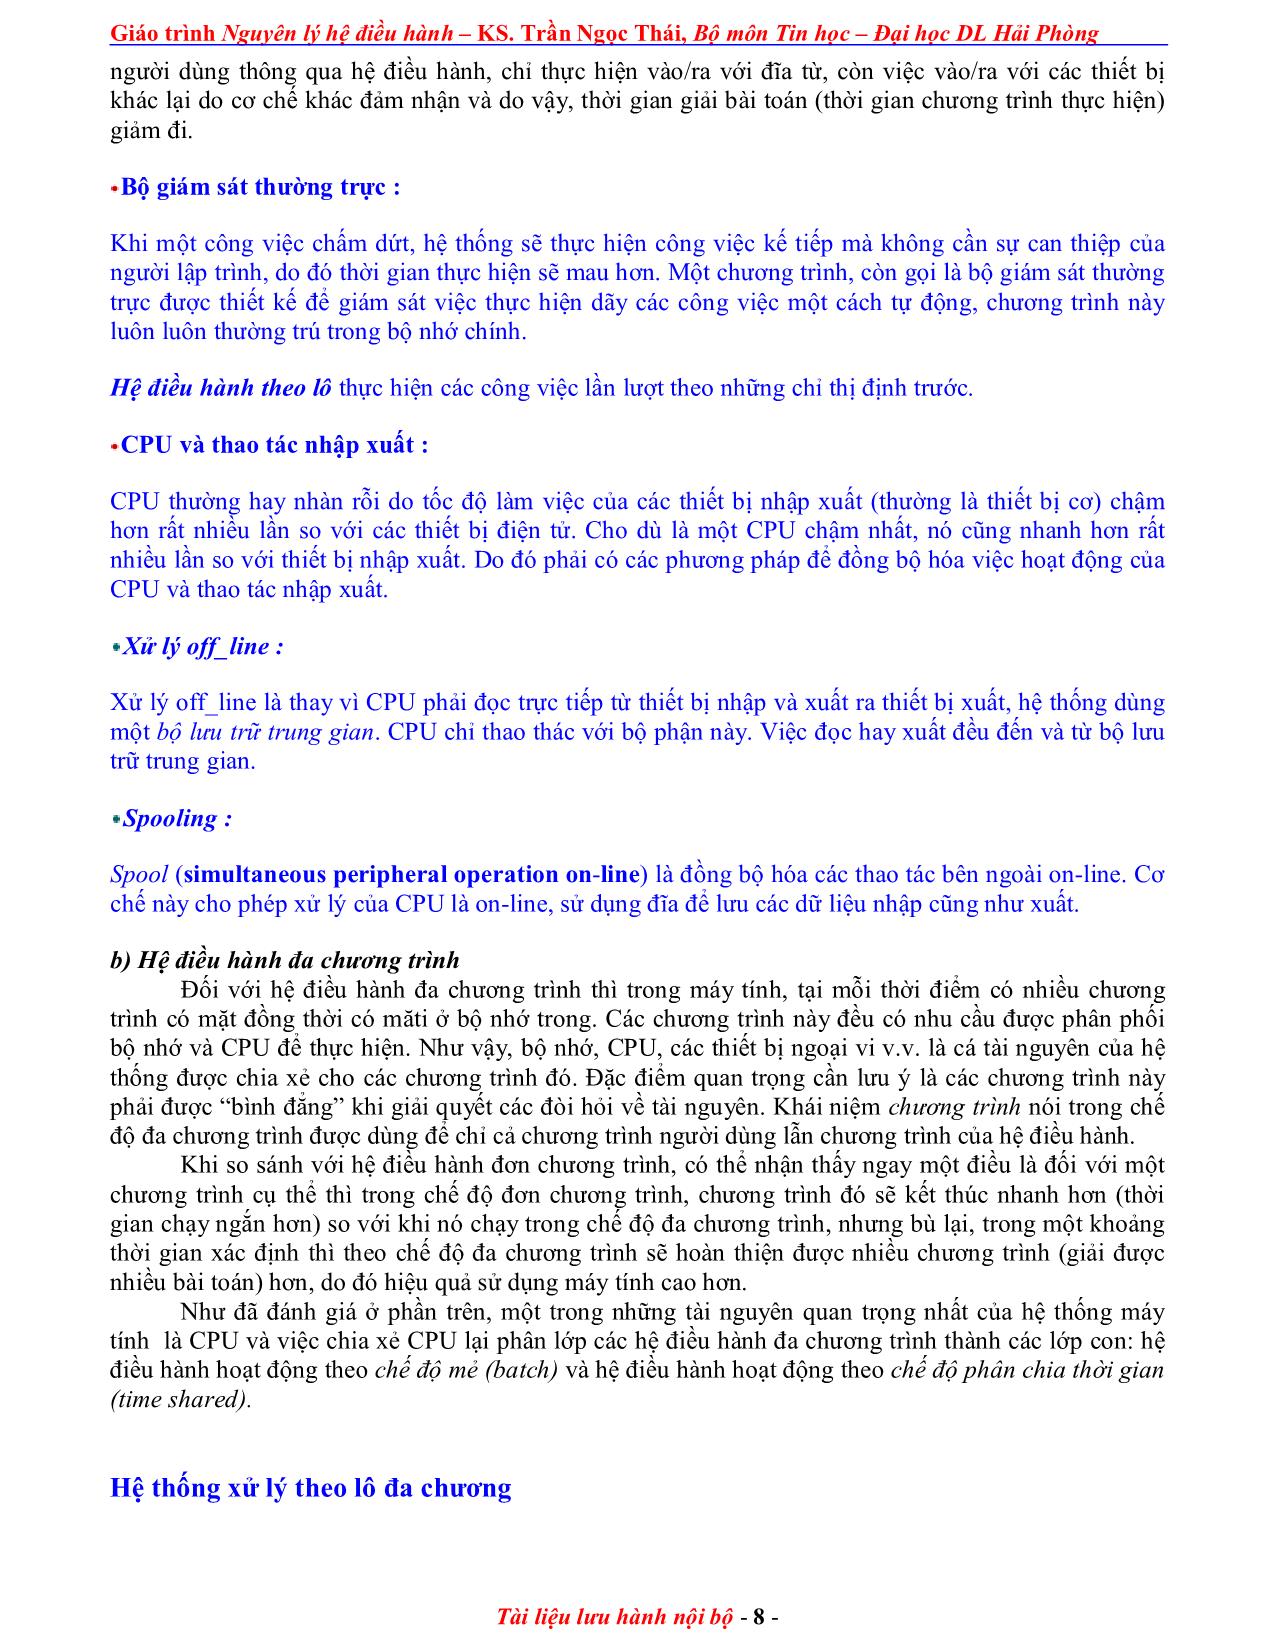 Giáo trình Nguyên lý điều hành (Phần 1) trang 8